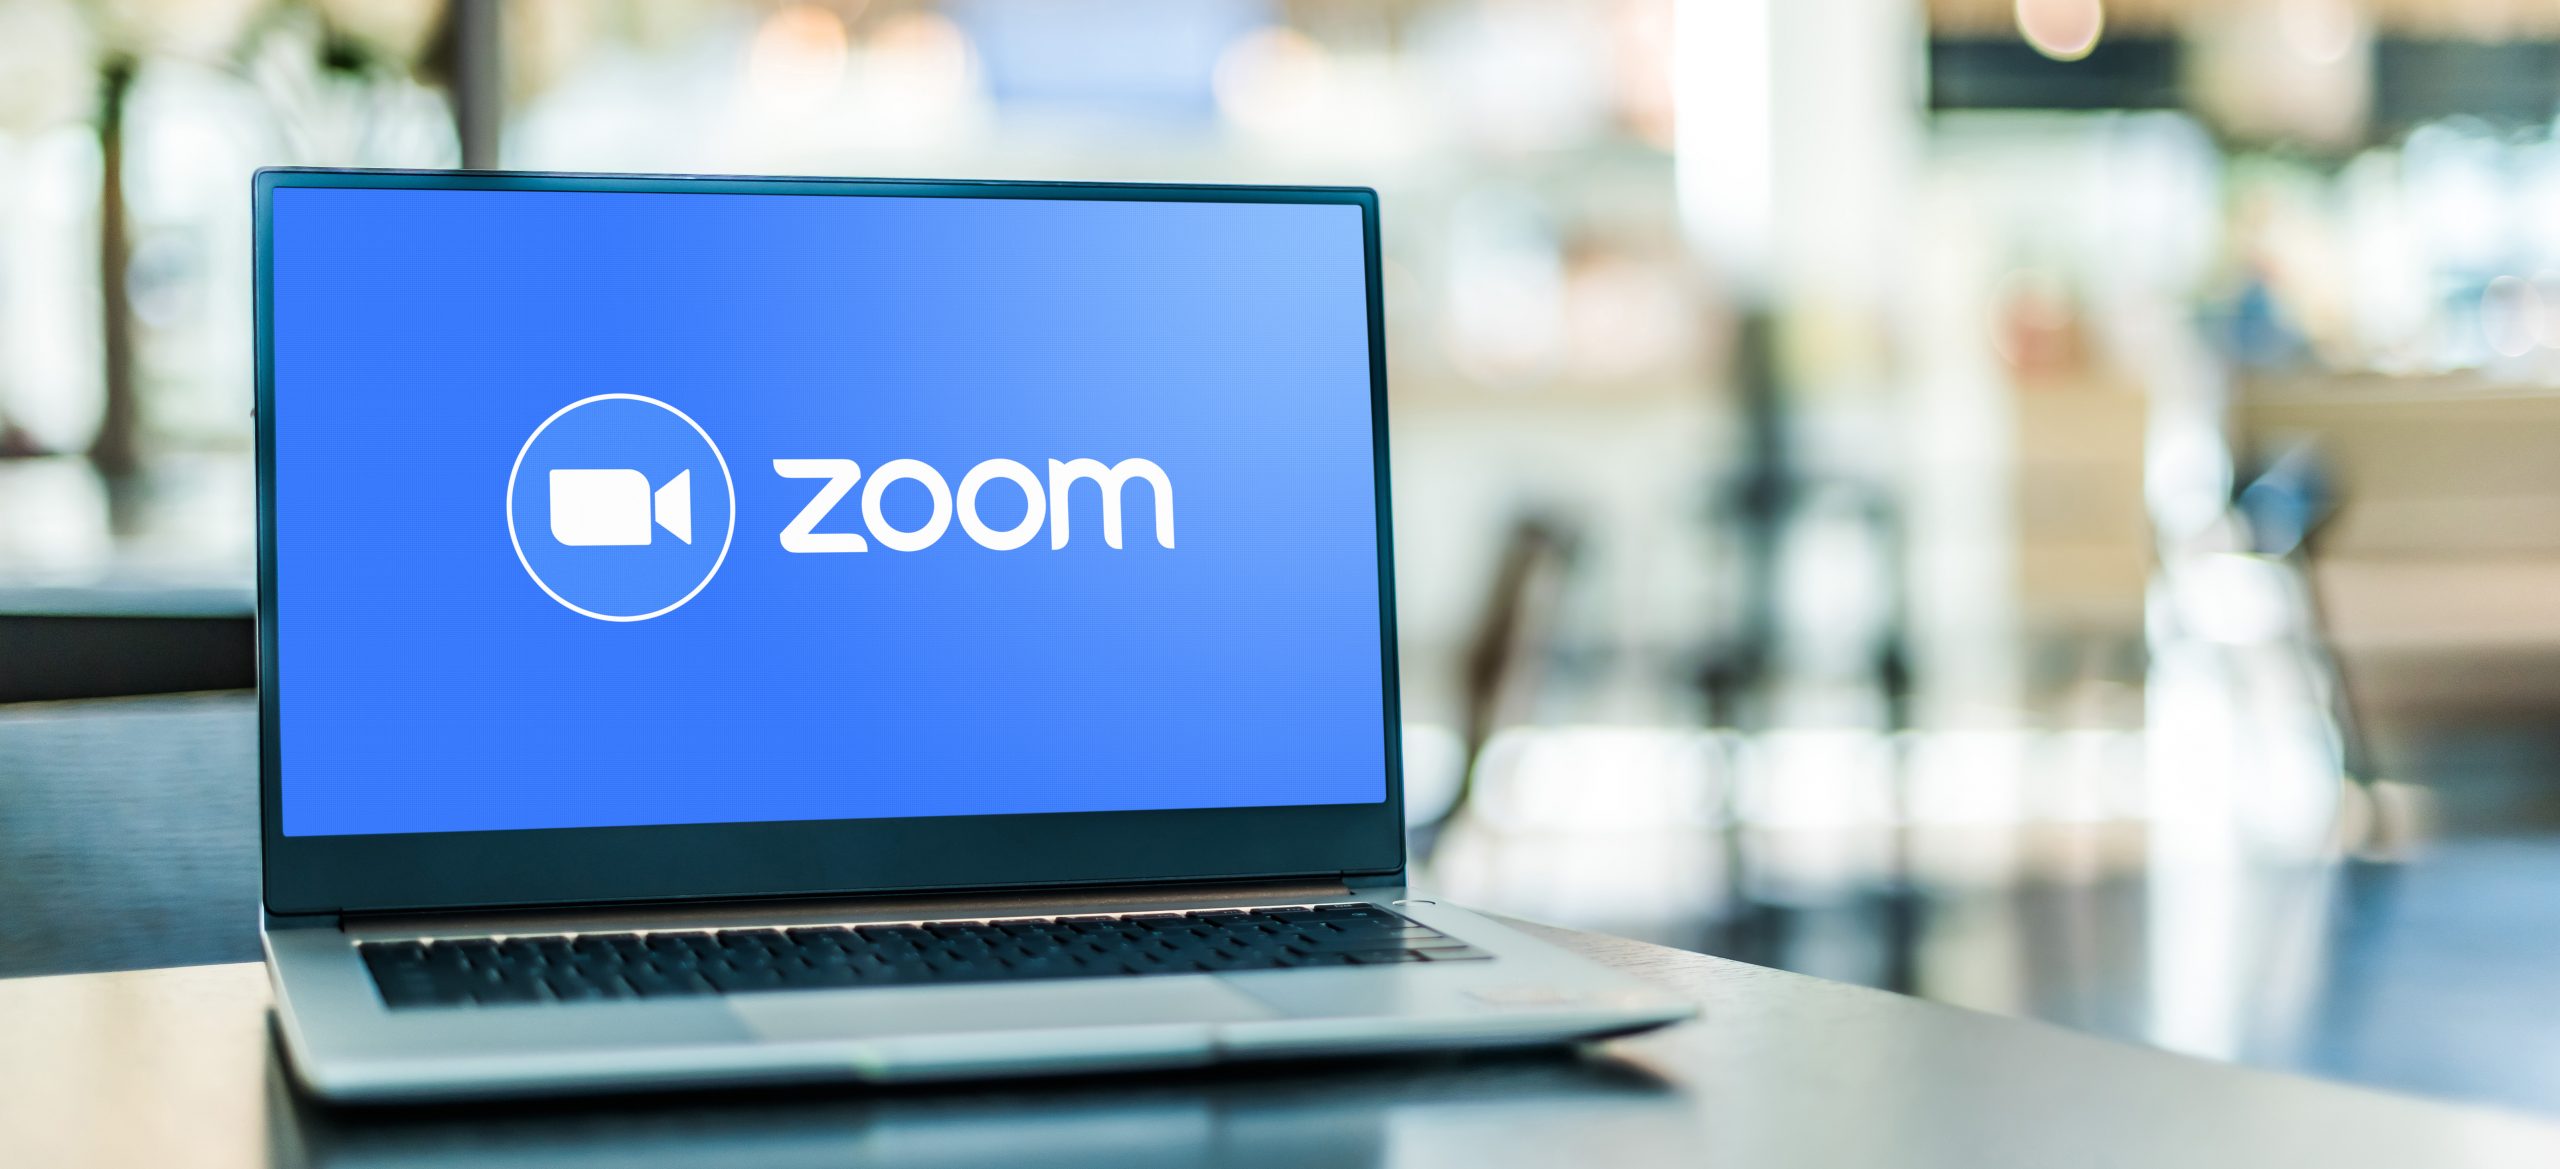 Laptop computer displaying logo of Zoom